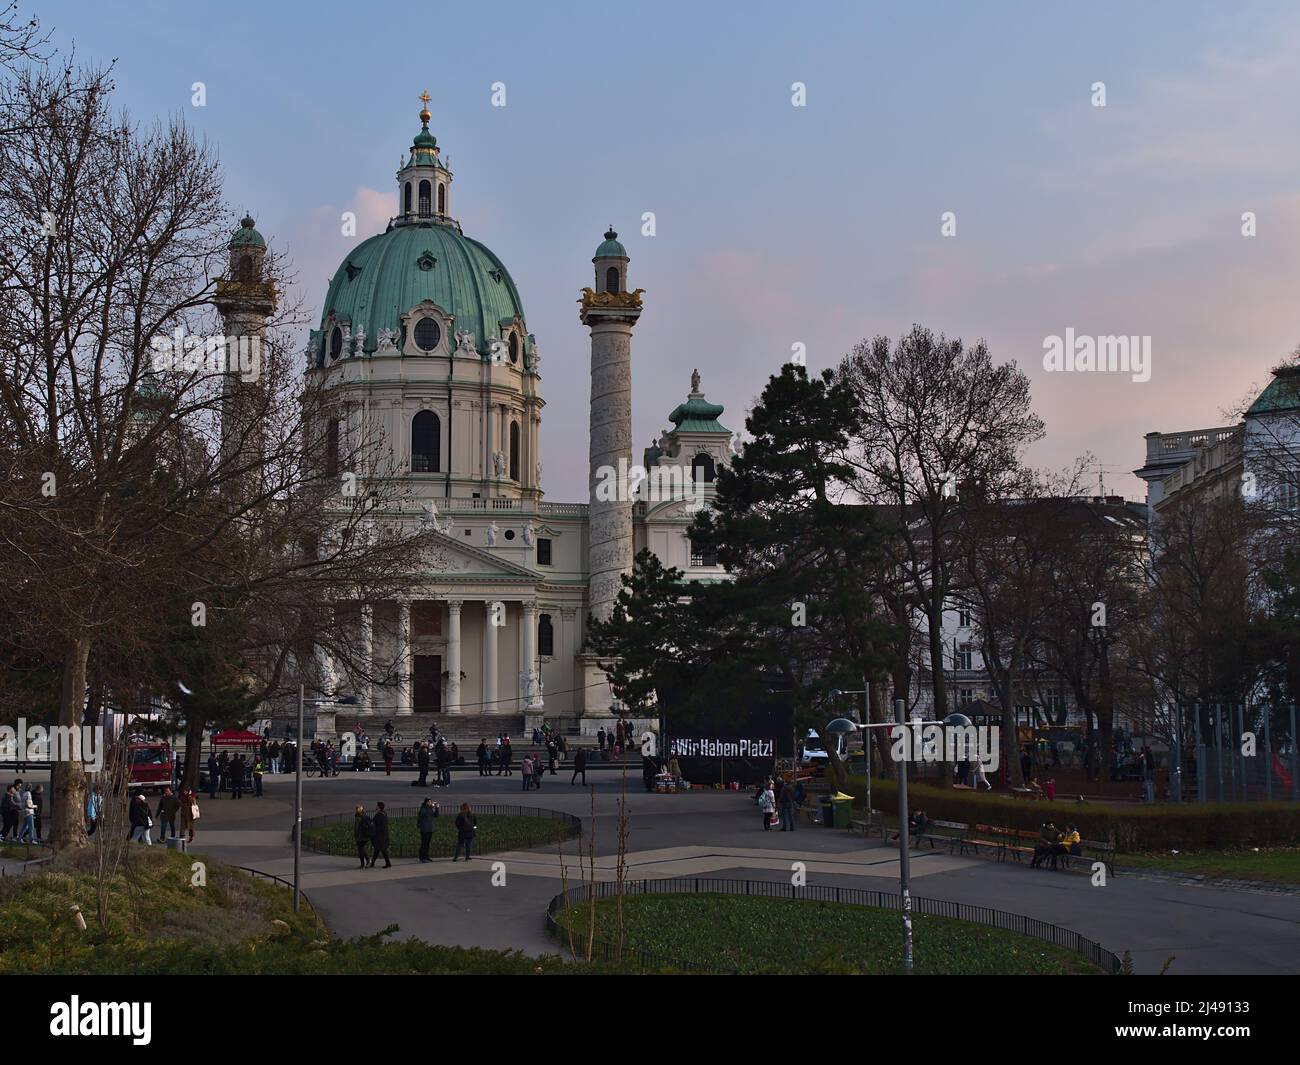 Vista sul parco pubblico Resselpark nel centro storico di Vienna, Austria, con la famosa chiesa Karlskirche e dimostrare la gente in serata. Foto Stock